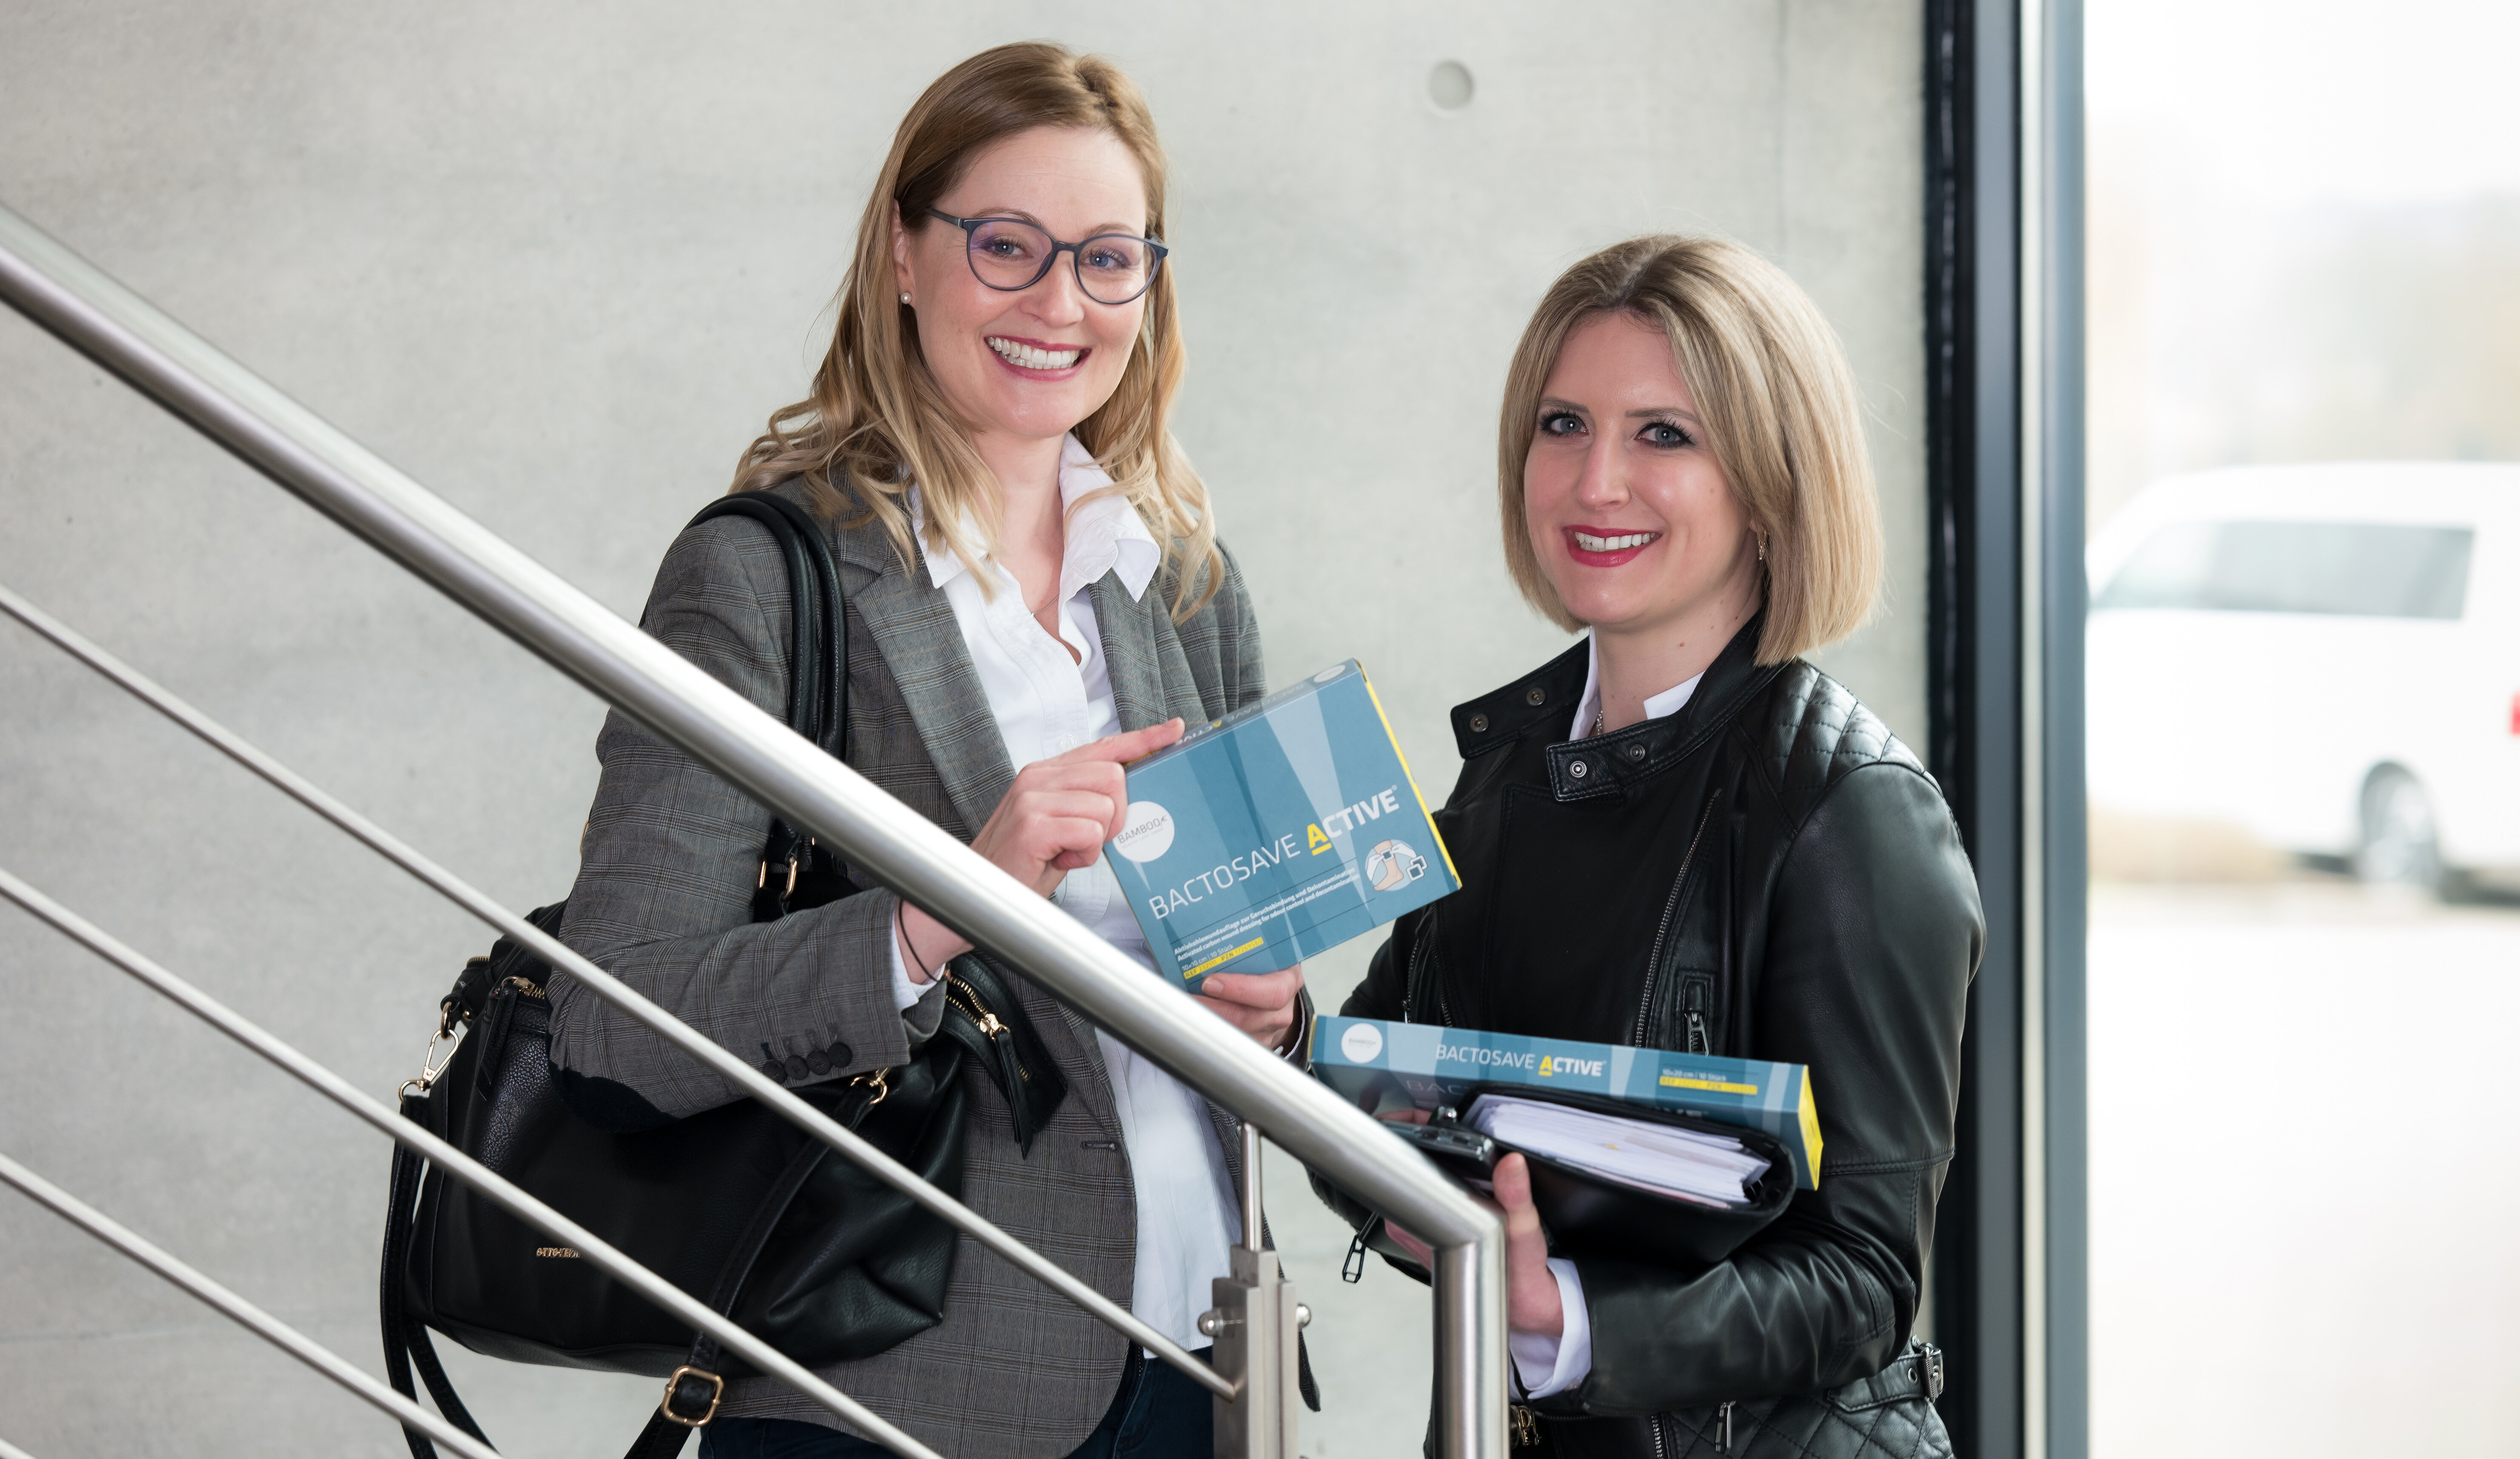 Unsere lächelnden Mitarbeiterinnen Karin und Tina mit BactoSave Active Verpackungen in  der Hand, stehend am Treppenaufgang im Bürogebäude. | © Bamboo Health Care GmbH